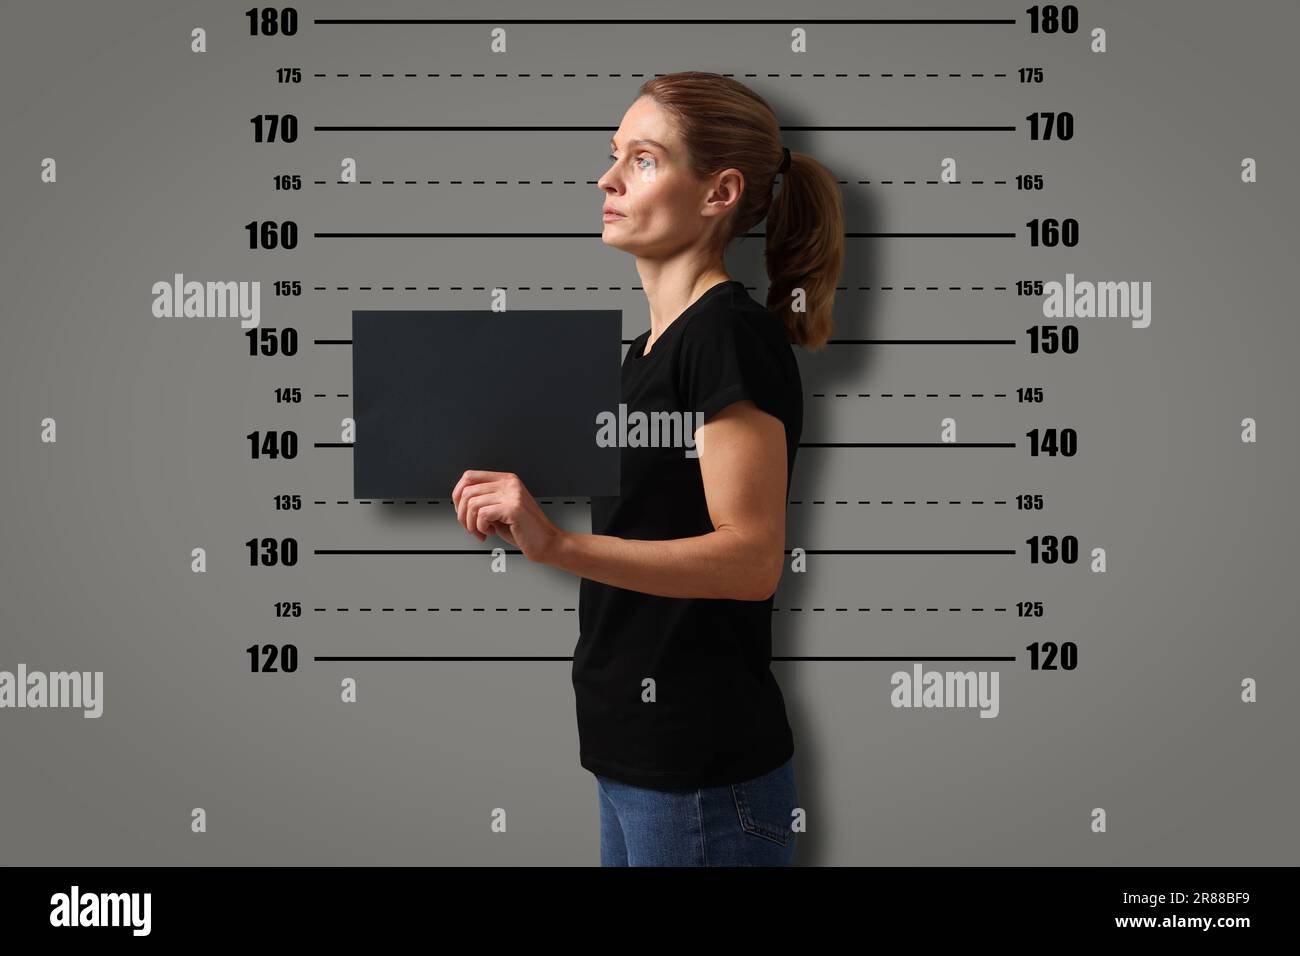 Coup de feu criminel. Femme arrêtée avec une carte vierge contre le tableau de hauteur Banque D'Images